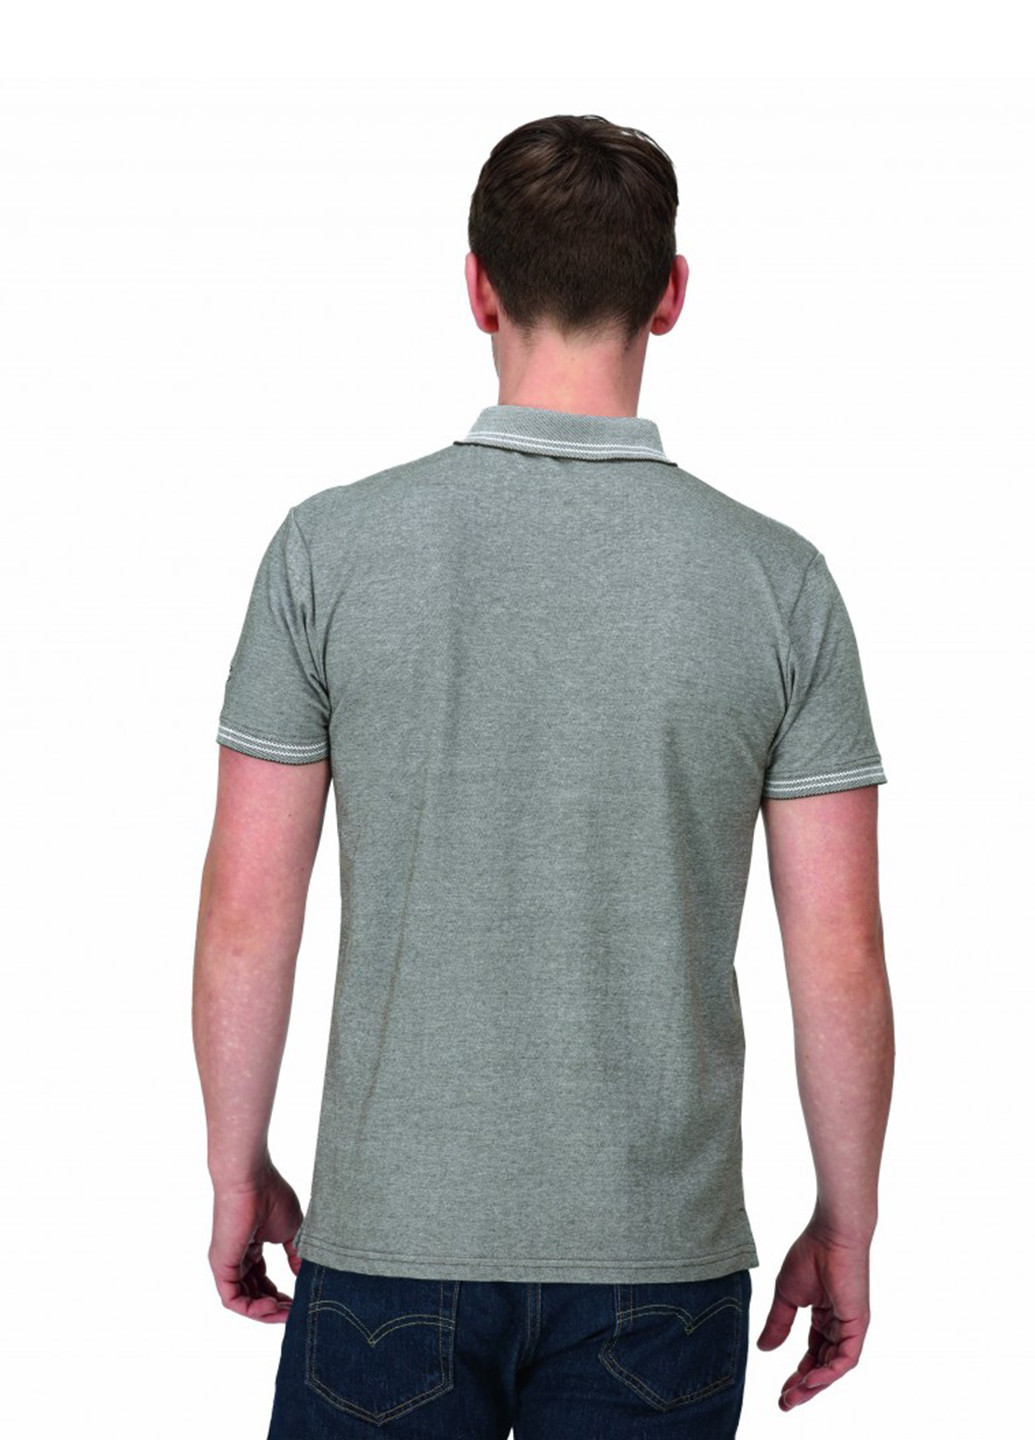 Оливковая (хаки) футболка-поло для мужчин Regatta меланжевая